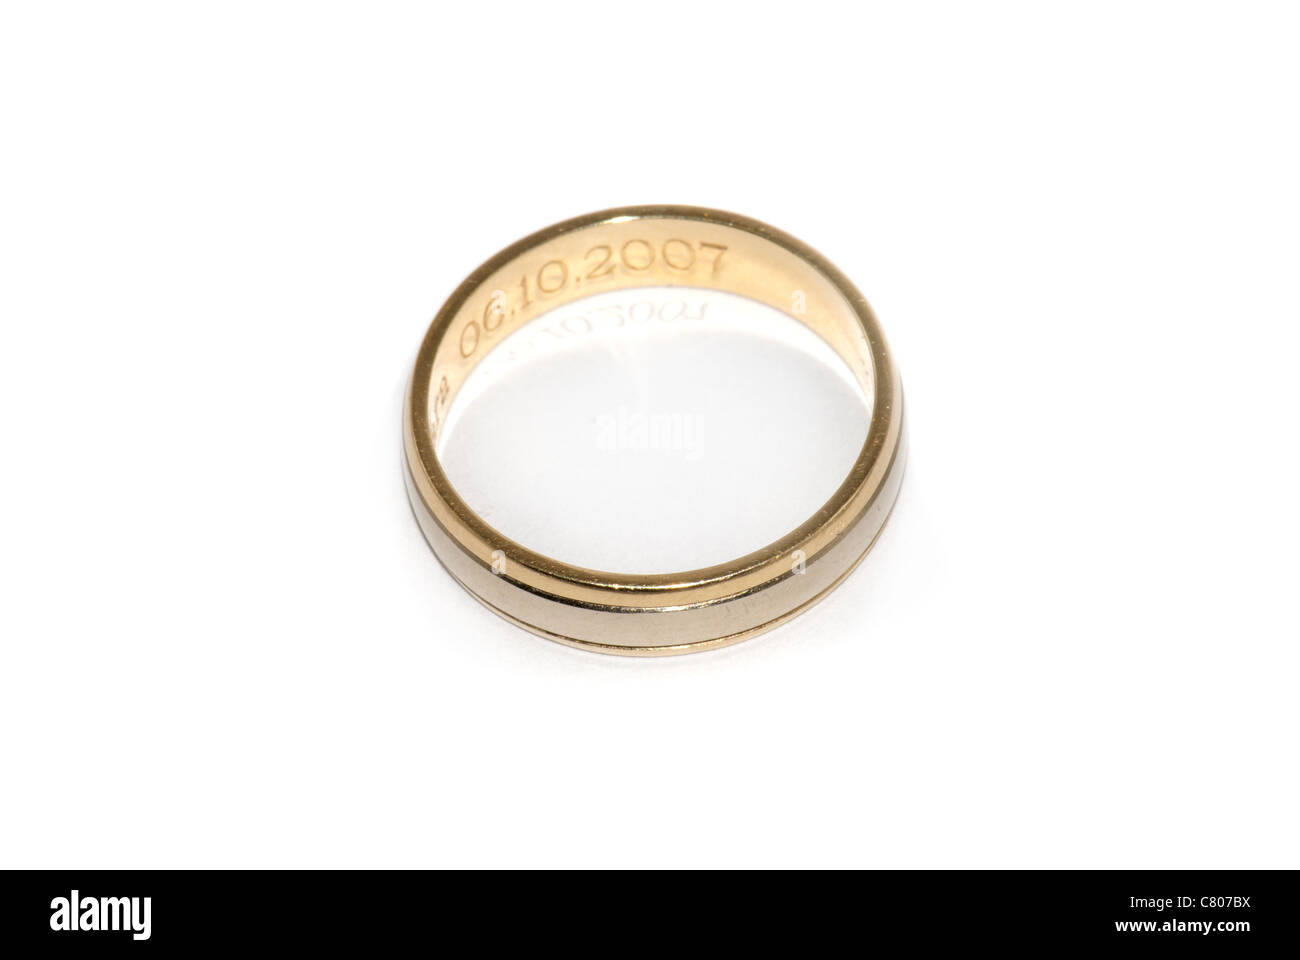 Wedding ring on white background Stock Photo